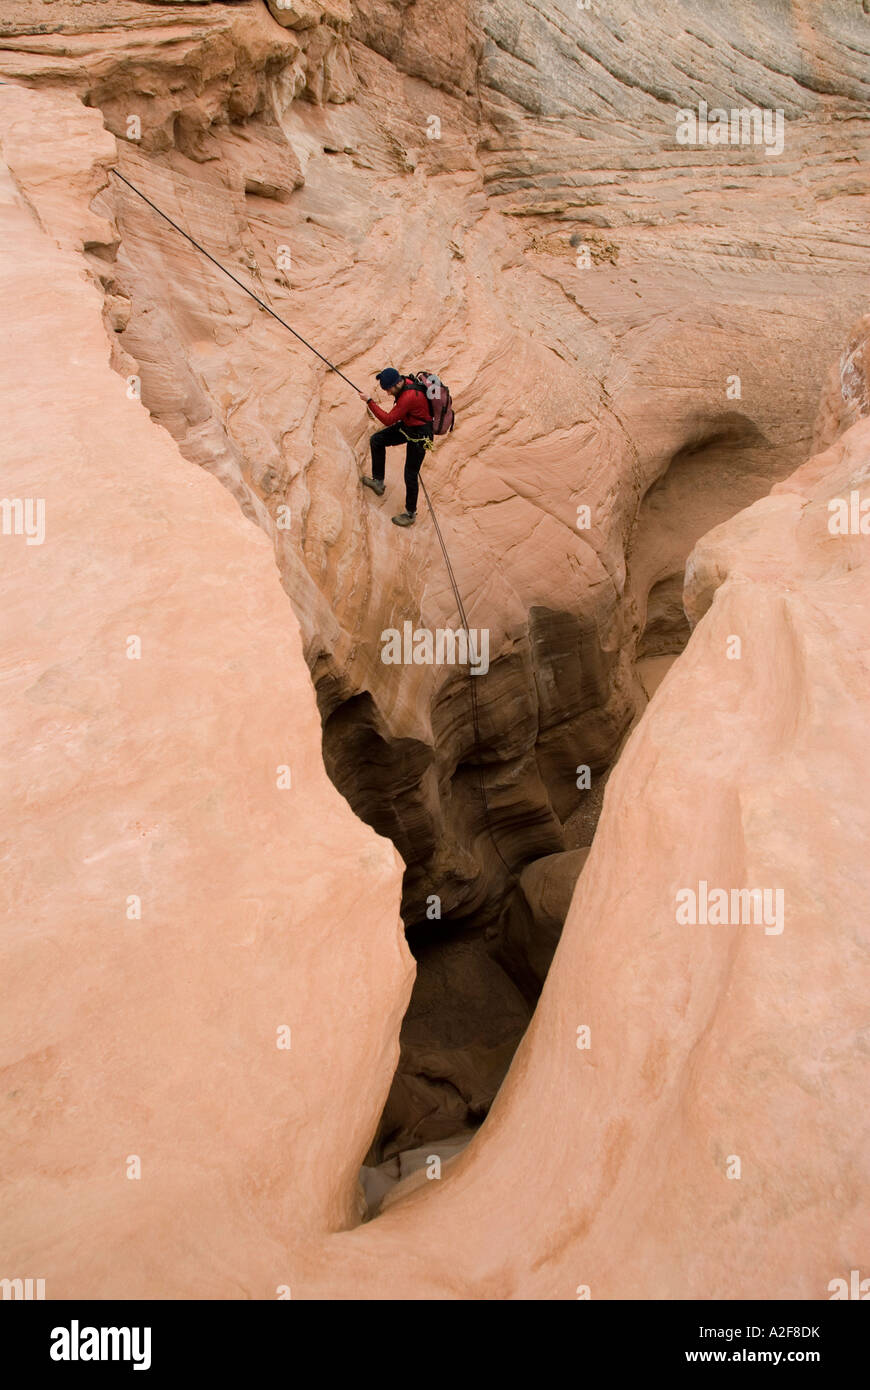 Des activités de l'homme vers le bas dans un canyon, Canyonlands, Utah Banque D'Images